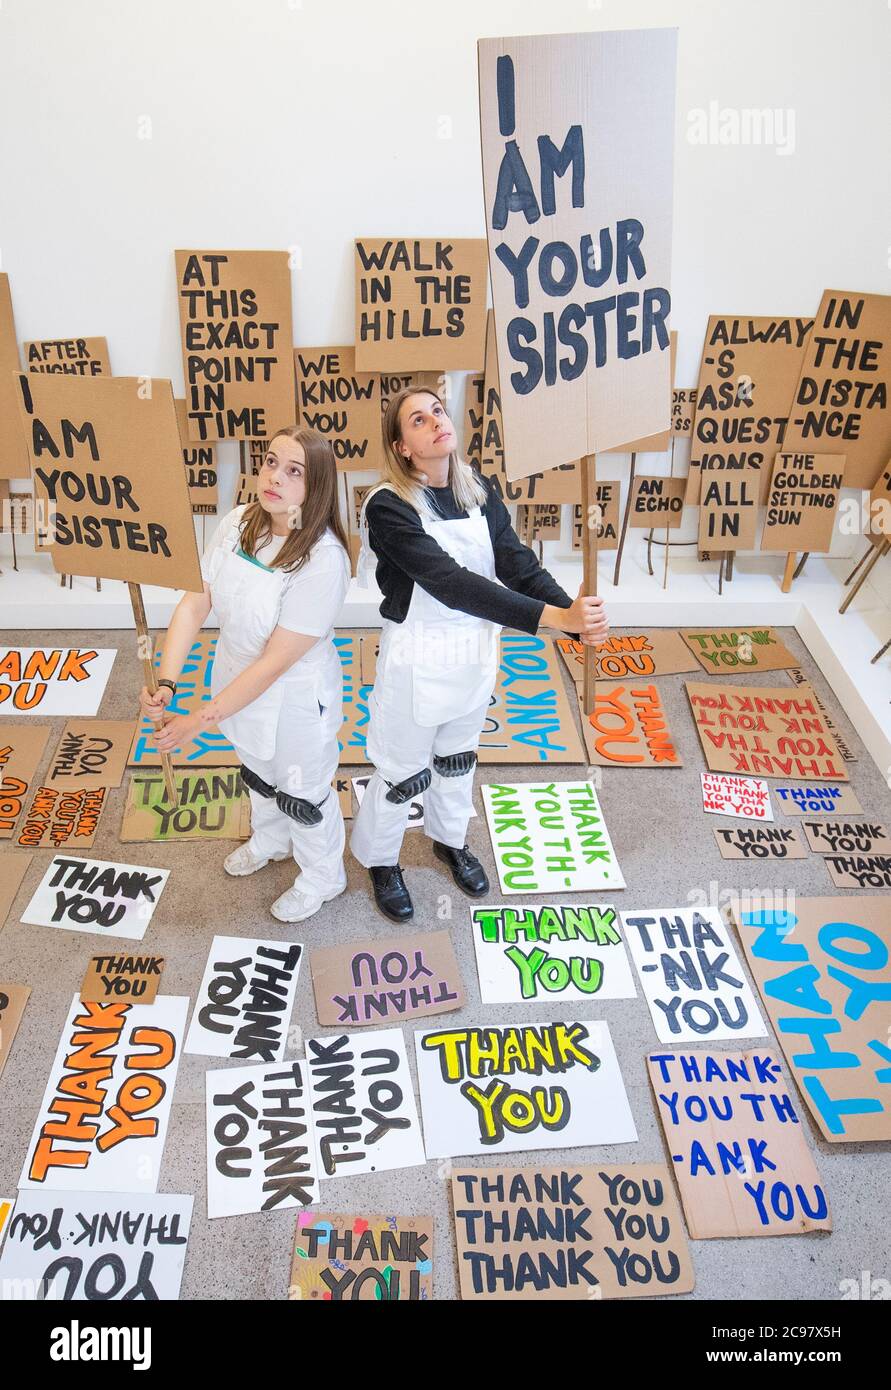 Mirin Cowey (links) und ihre Schwester Beth Cowey (rechts) vom Orbit Youth Council, die dem Künstler Peter Liversidge assistierten, betreiben ein Sign Painting Studio, in dem Kunstwerke zum Mitnehmen im Jupiter Artland in Edinburgh gemalt werden. Die Performance ist Teil von 'Happenings', einer Veranstaltungsreihe, die vom Werk des spätamerikanischen Avantgarde-Künstlers Allan Kaprow (1927-2006) inspiriert ist. Stockfoto